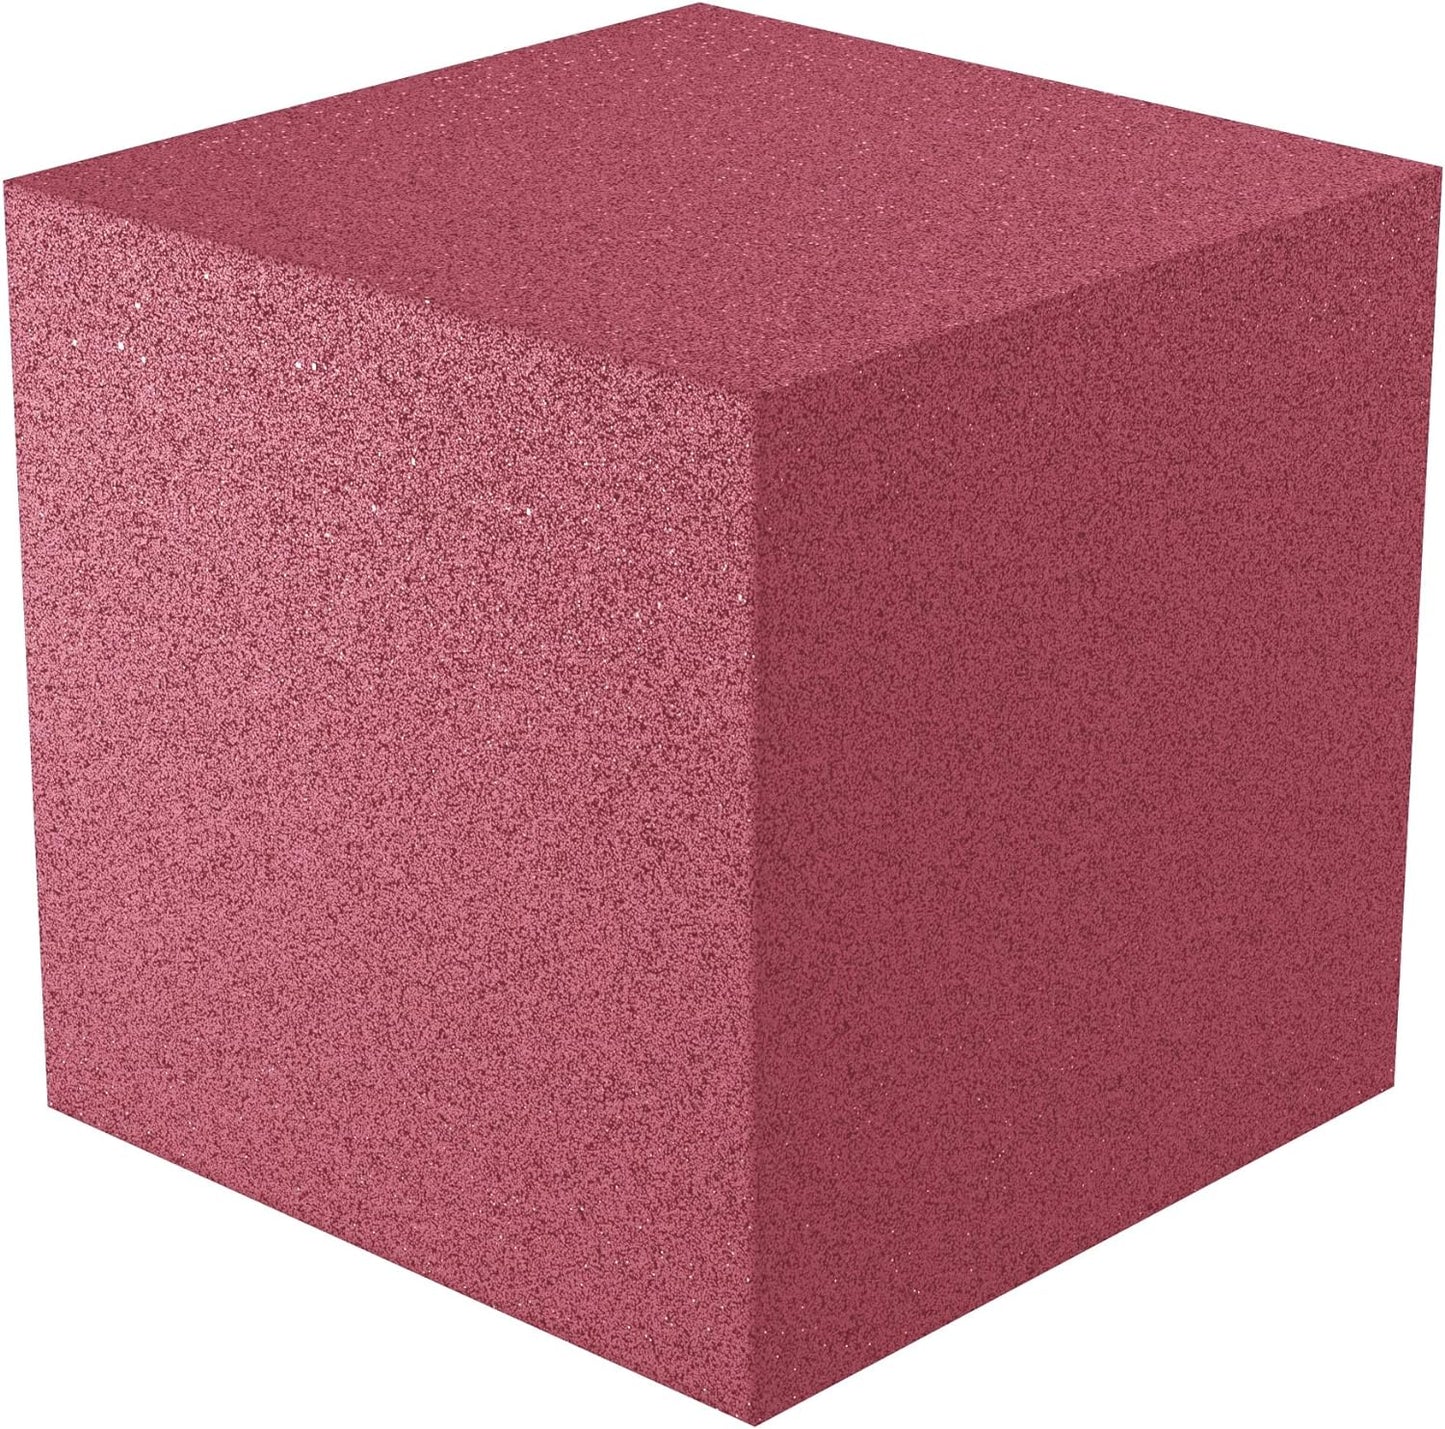 12x12x12 acoustic foam corner block - burgundy foam square